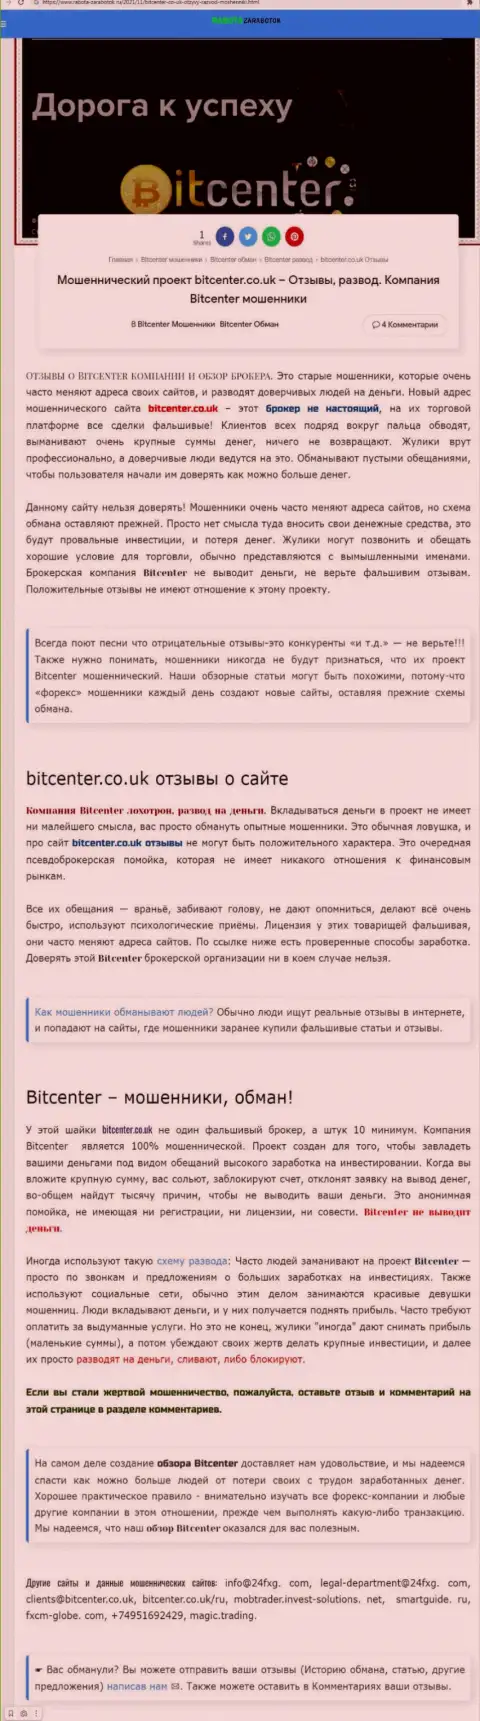 BitCenter - это контора, совместное взаимодействие с которой доставляет лишь убытки (обзор афер)